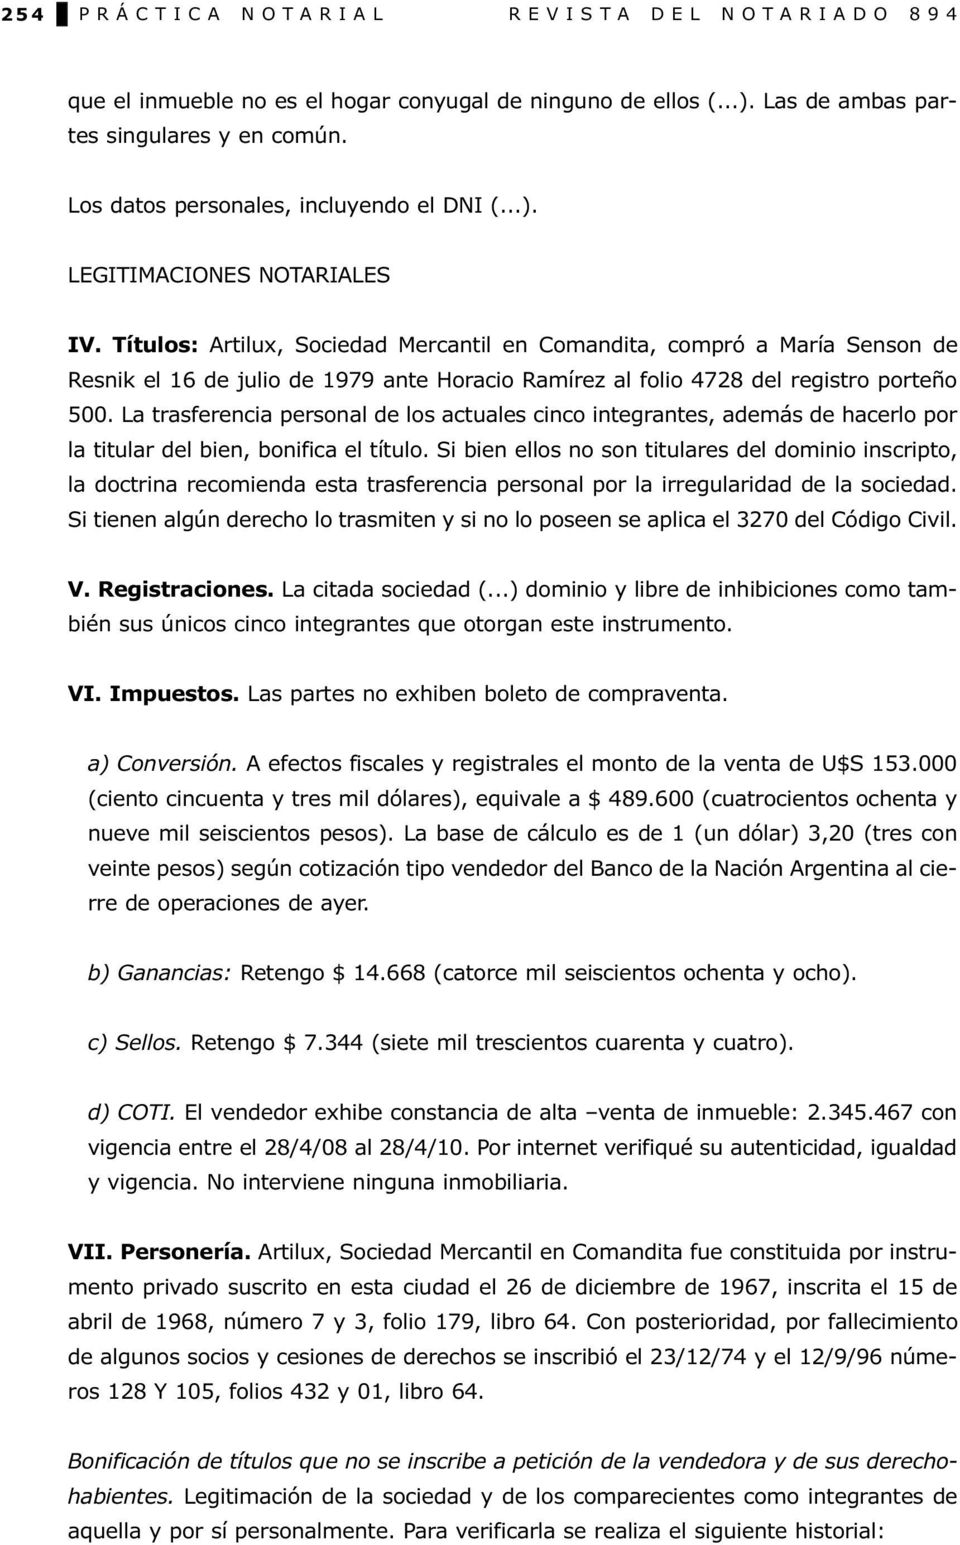 Títulos: Artilux, Sociedad Mercantil en Comandita, compró a María Senson de Resnik el 16 de julio de 1979 ante Horacio Ramírez al folio 4728 del registro porteño 500.